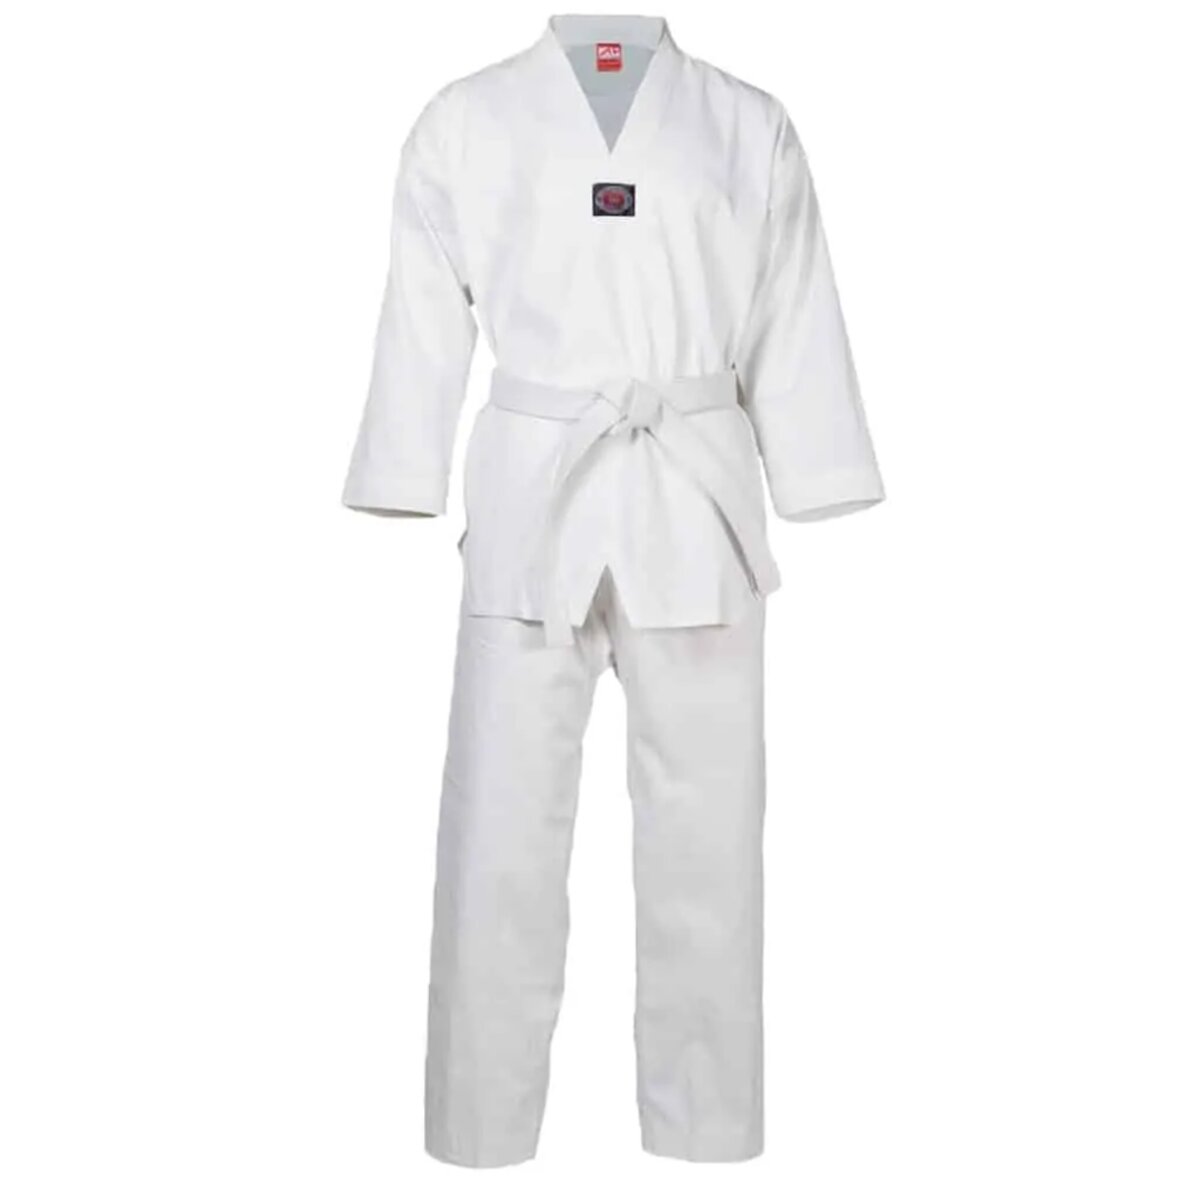 Lưu ý khi chọn mua võ phục Taekwondo